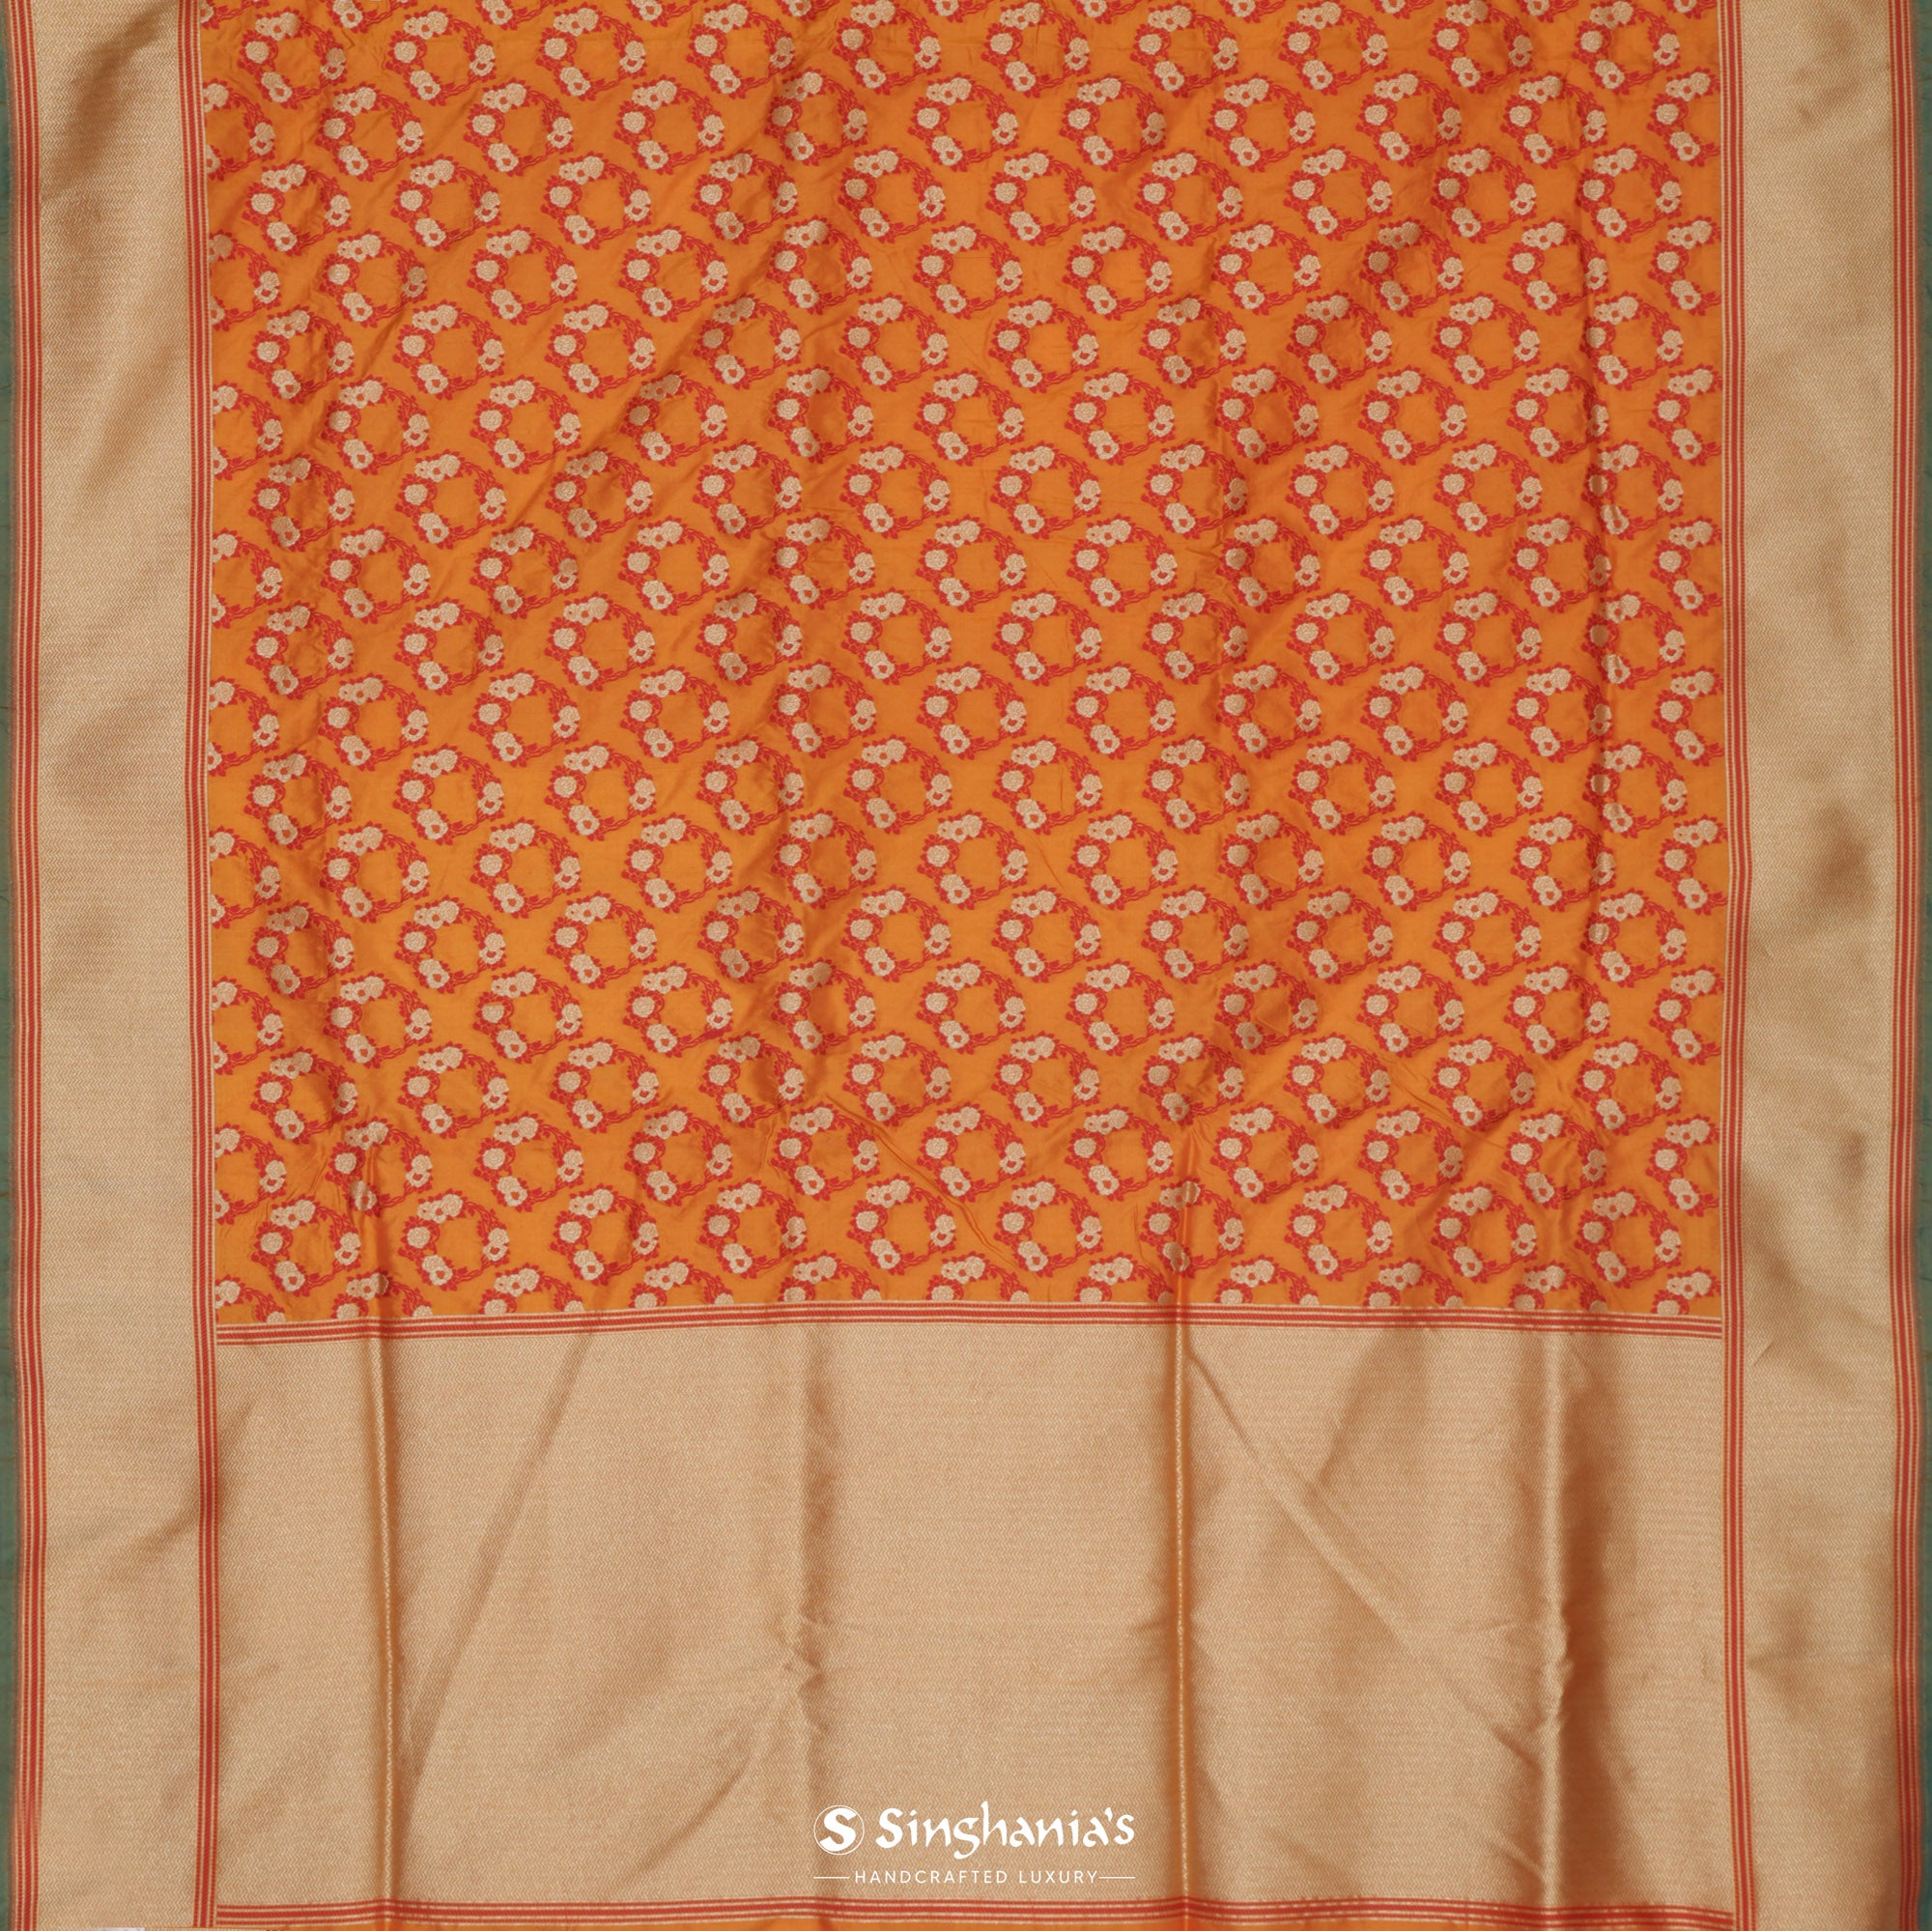 Dahlia Yellow Silk Saree With Banarasi Weaving